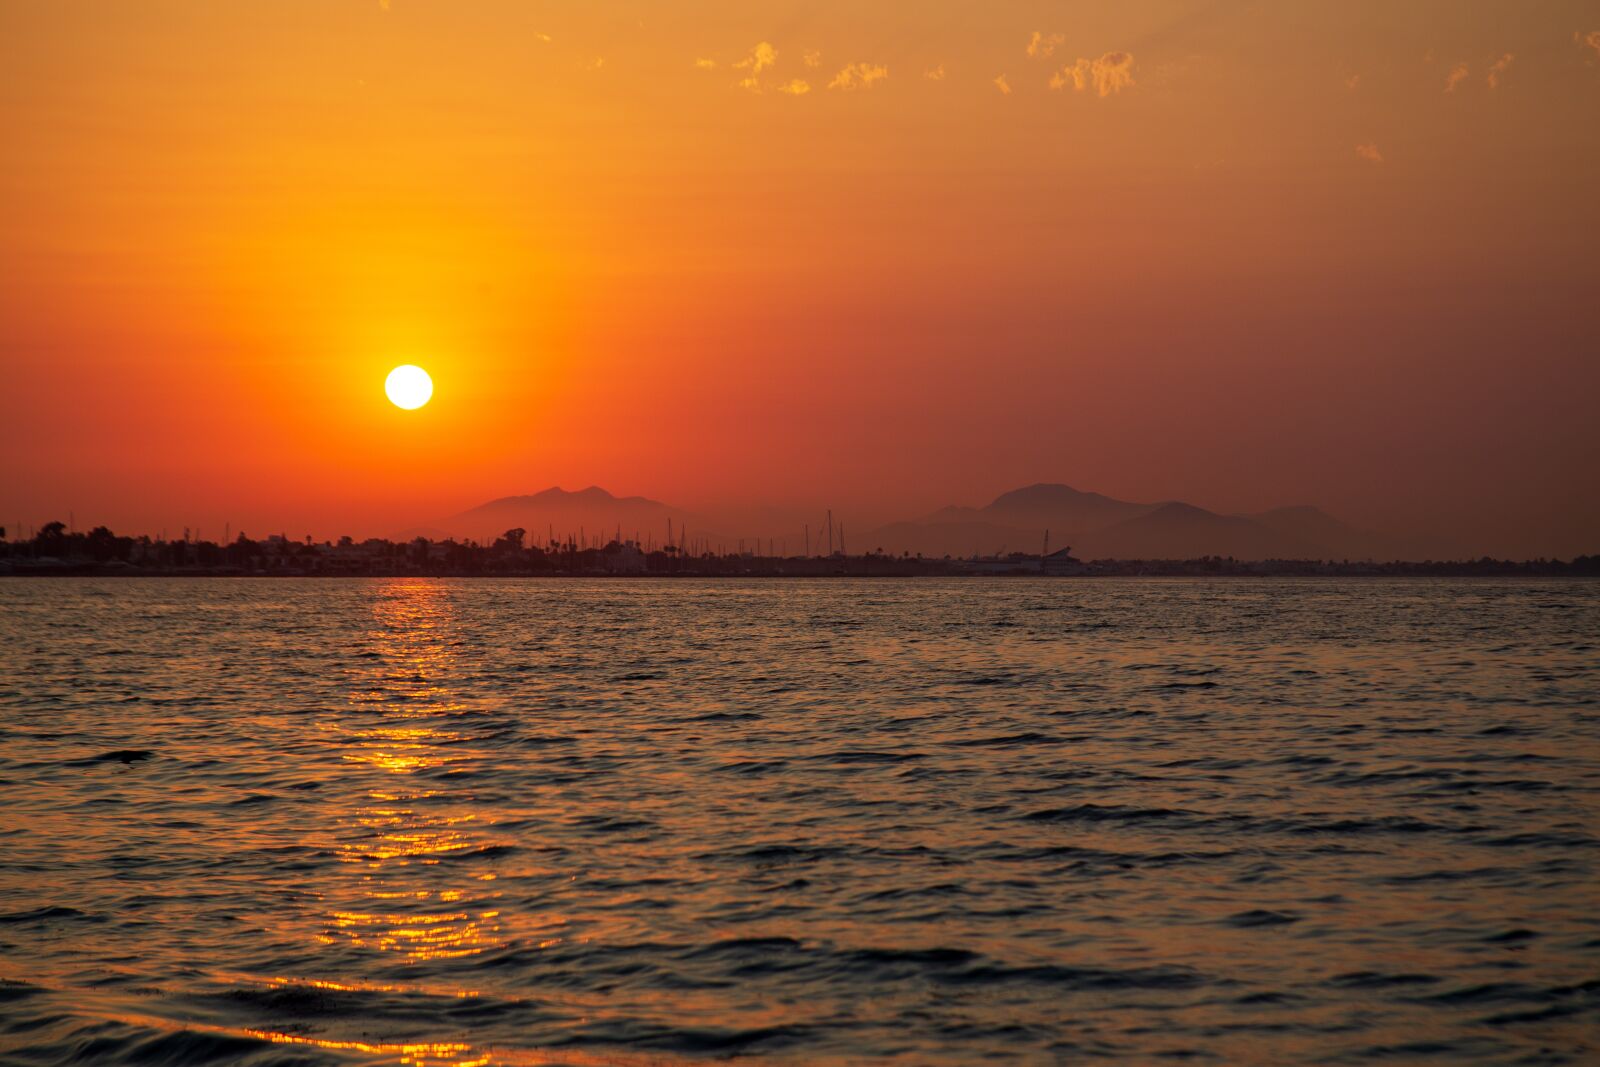 Canon EF 28-135mm F3.5-5.6 IS USM sample photo. Sunset, sunrise, landscape photography